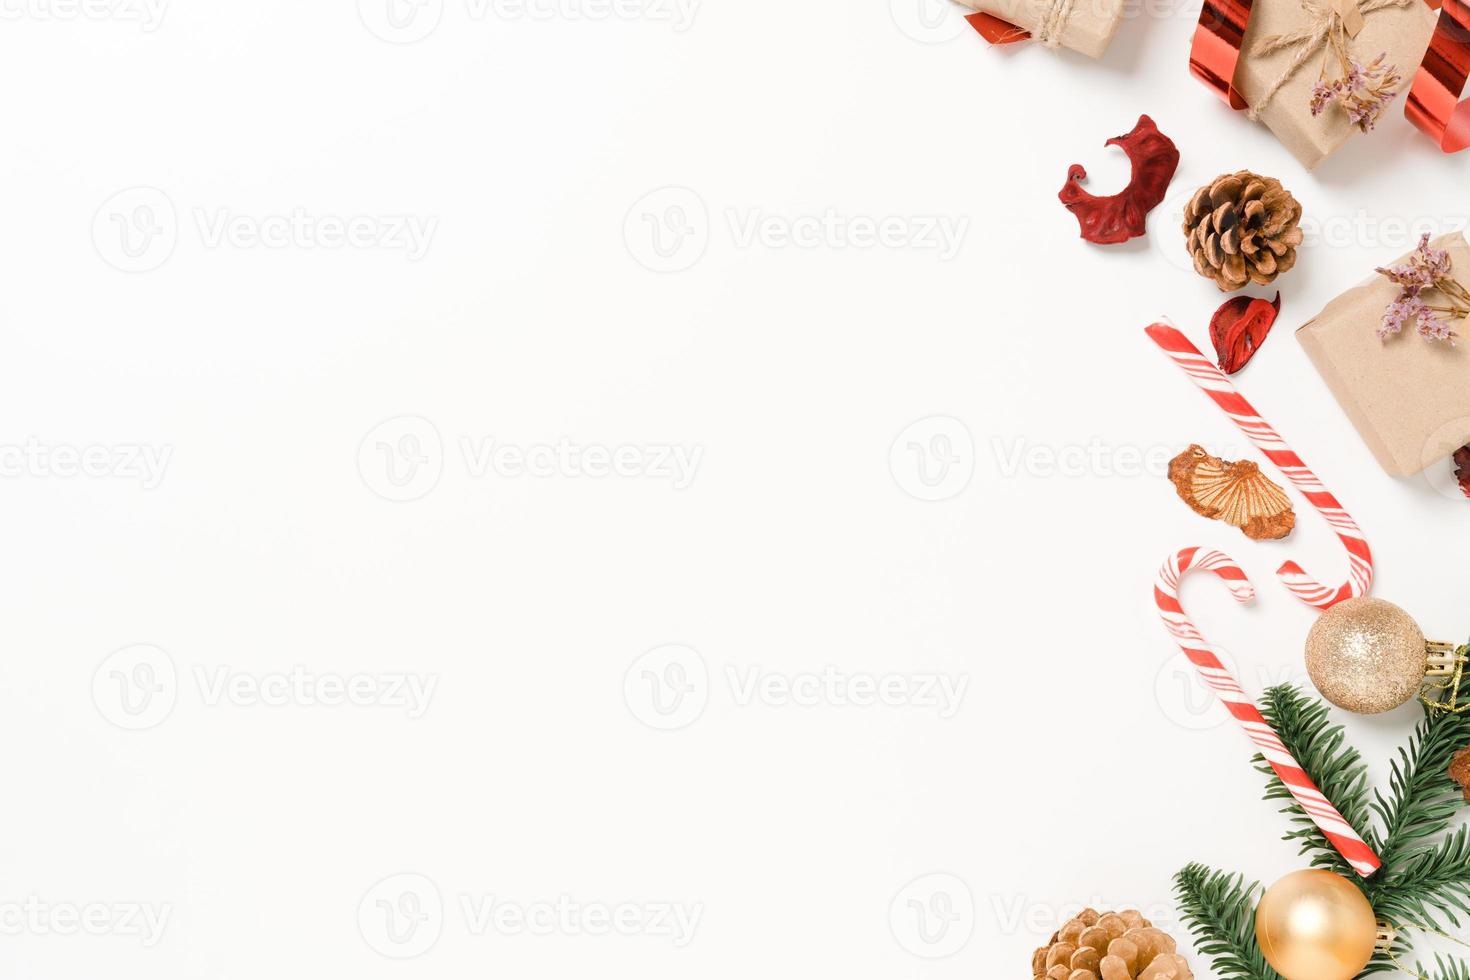 minima disposizione piatta creativa della composizione tradizionale natalizia e delle festività natalizie di capodanno. vista dall'alto decorazioni natalizie invernali su sfondo bianco con spazio vuoto per il testo. copia spazio fotografico. foto